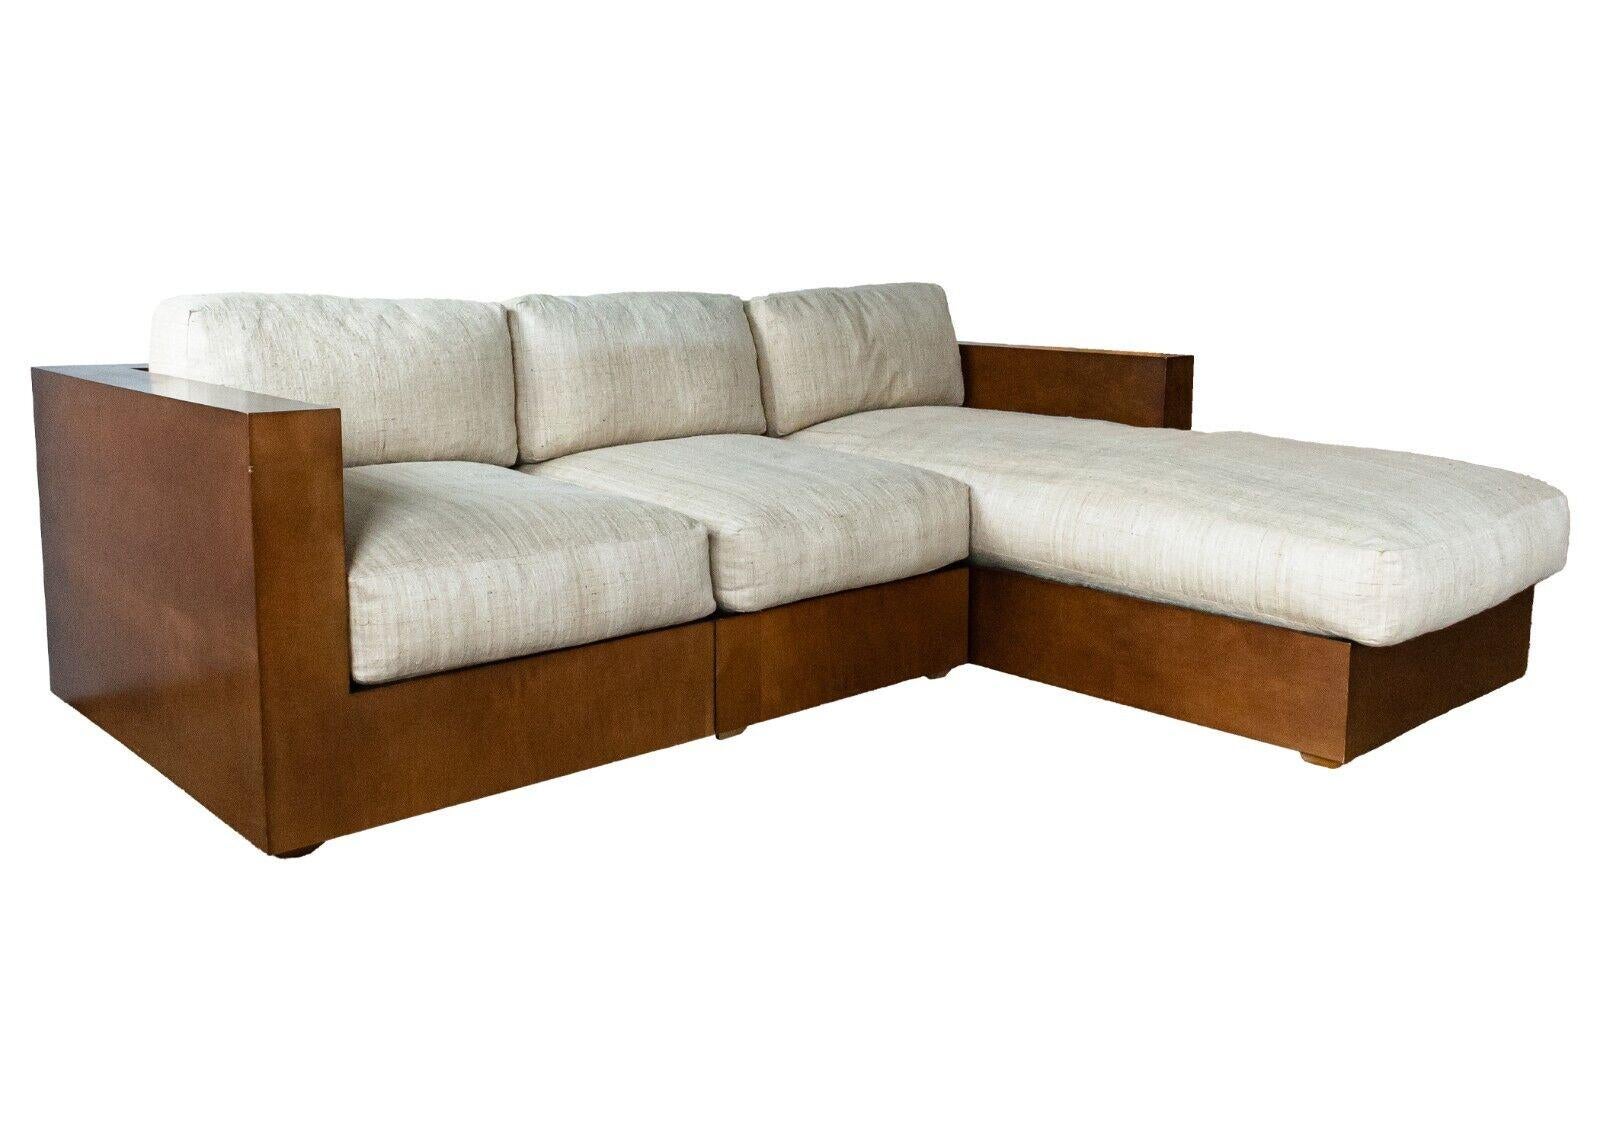 Ein Ralph Lauren Walnussholz 3 Stück modulares Sektionssofa. Ein erstaunliches Sofa von Ralph Lauren mit einer sehr sauberen und eleganten halbglänzenden Walnussholzkonstruktion. Diese Sitzgruppe ist modular aufgebaut und kann individuell gestaltet